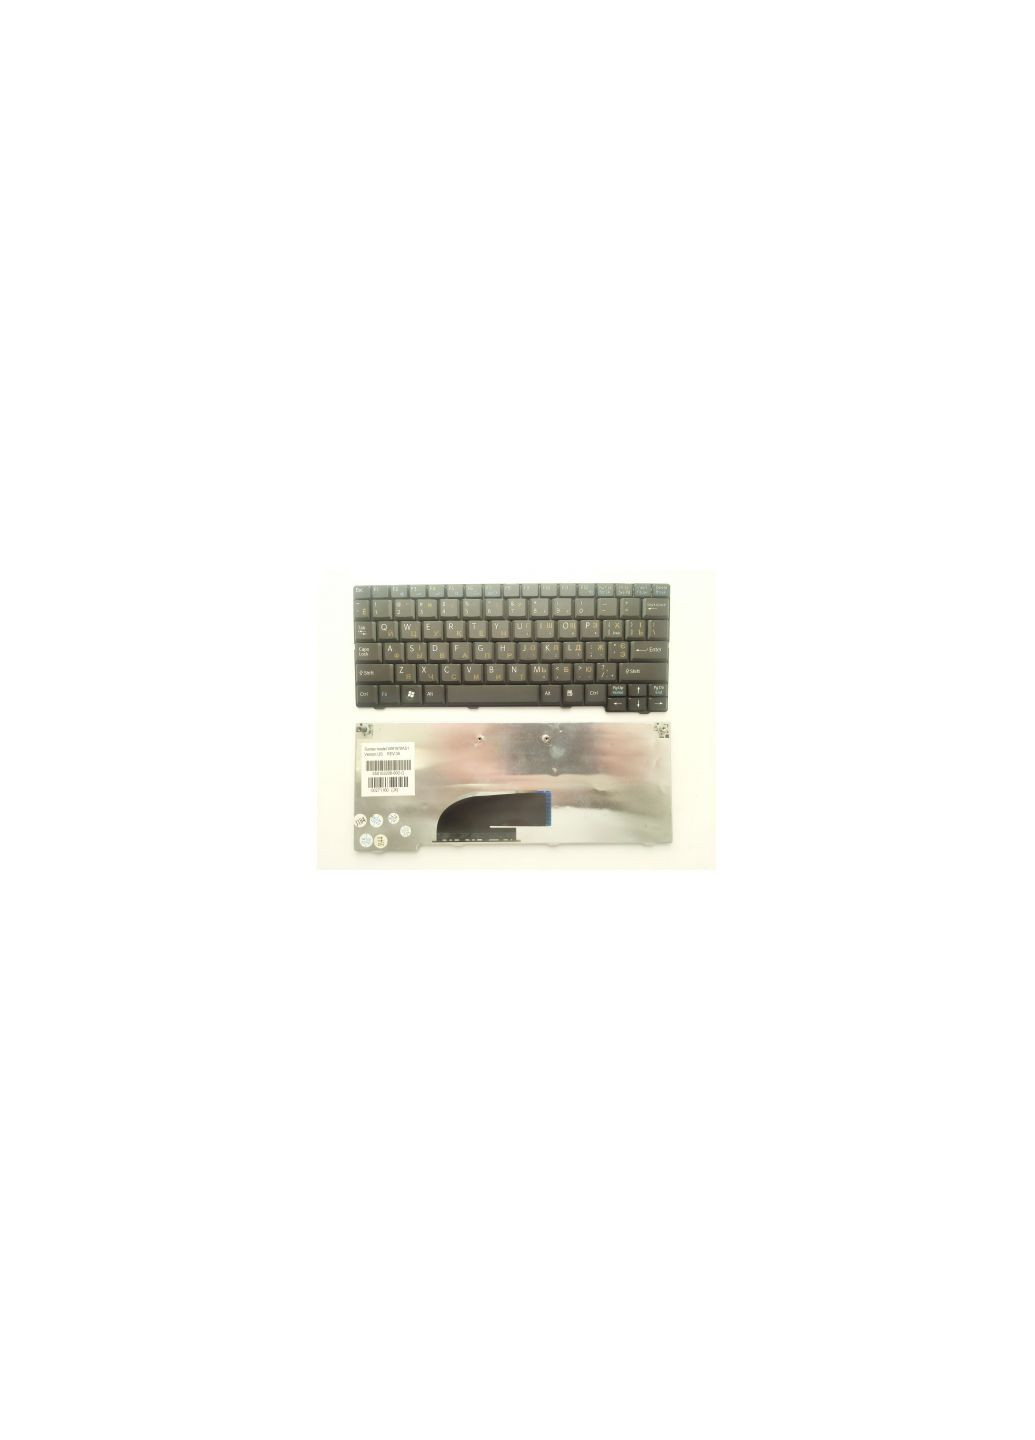 Клавиатура ноутбука VPCM12/M13 Series черная UA (A43094) Sony vpc-m12/m13 series черная ua (276707409)